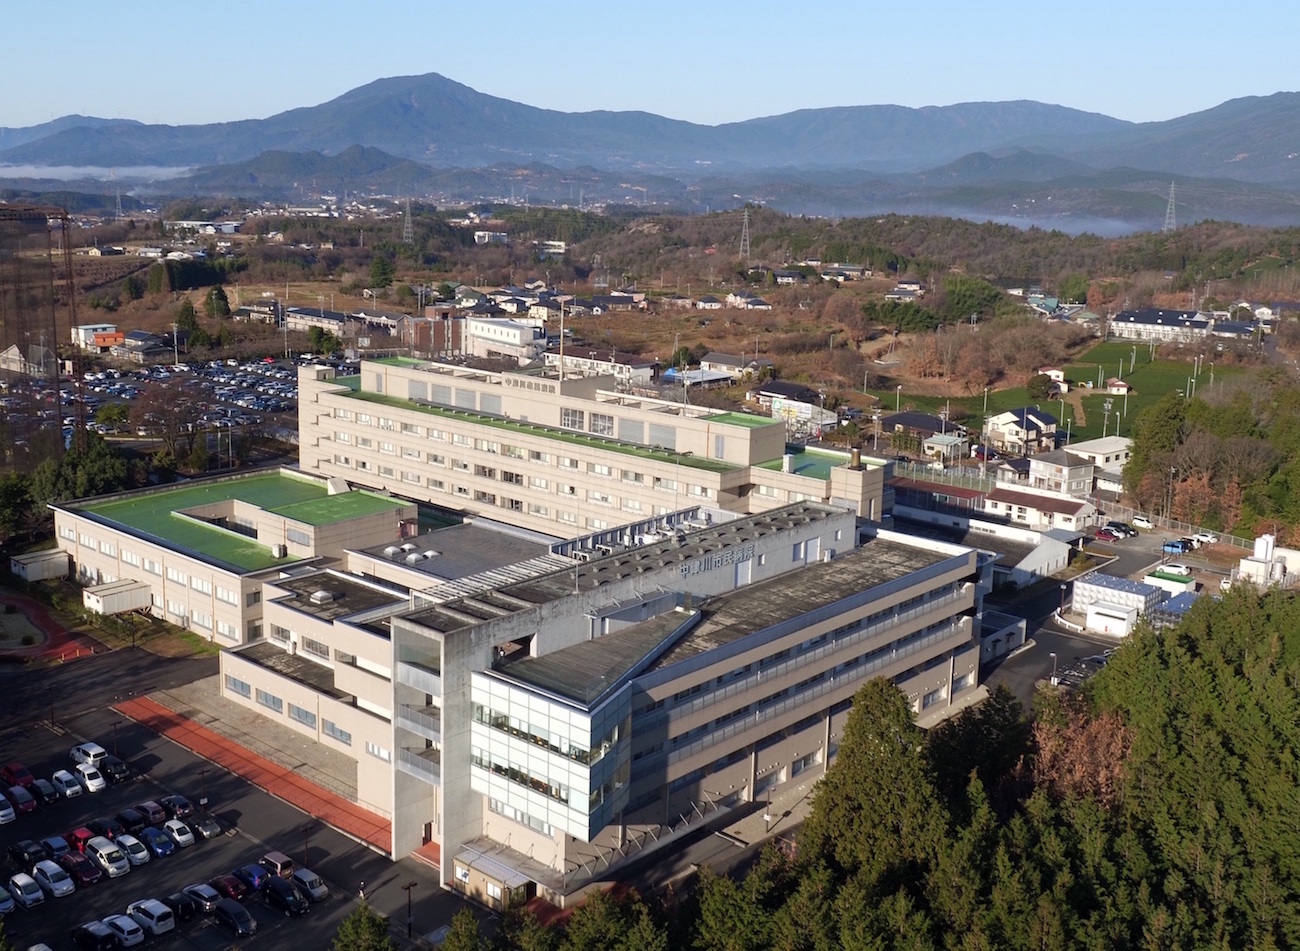 上空から望む中津川市民病院と左上は笠置山